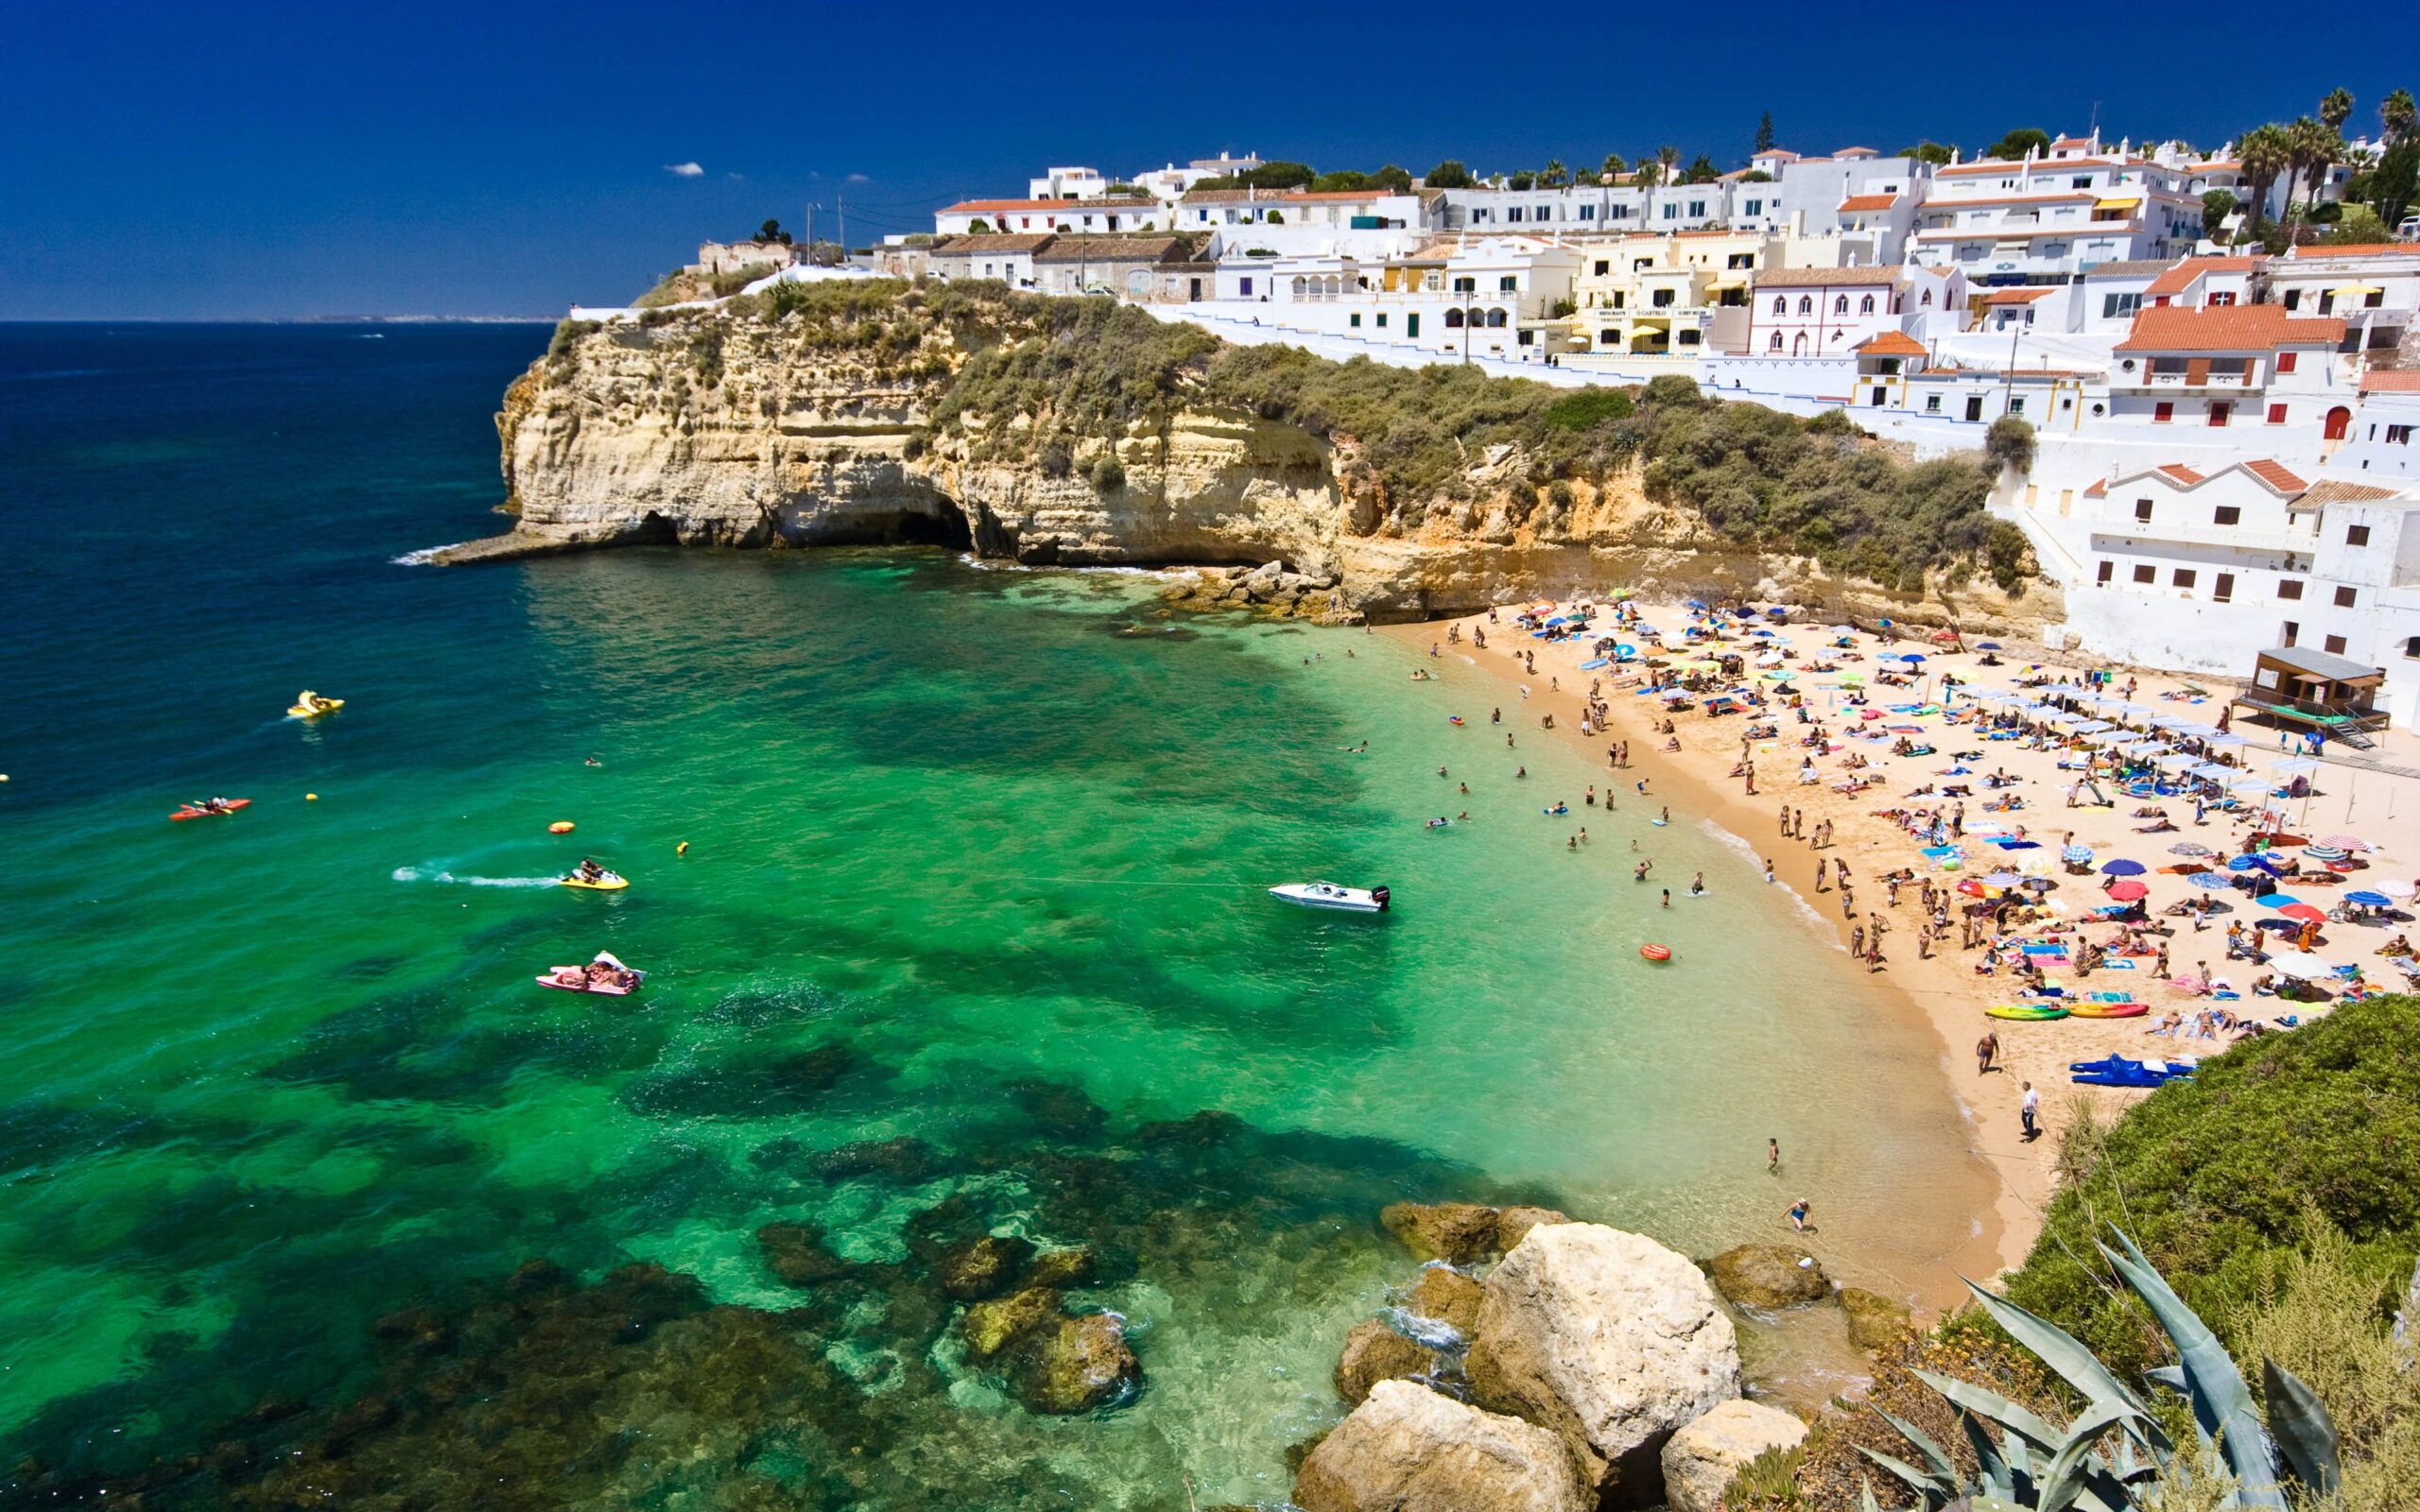 O saptamana in minunatul Algarve, Portugalia – 307 euro (zbor + cazare) – cunoscut pentru plaje exotice